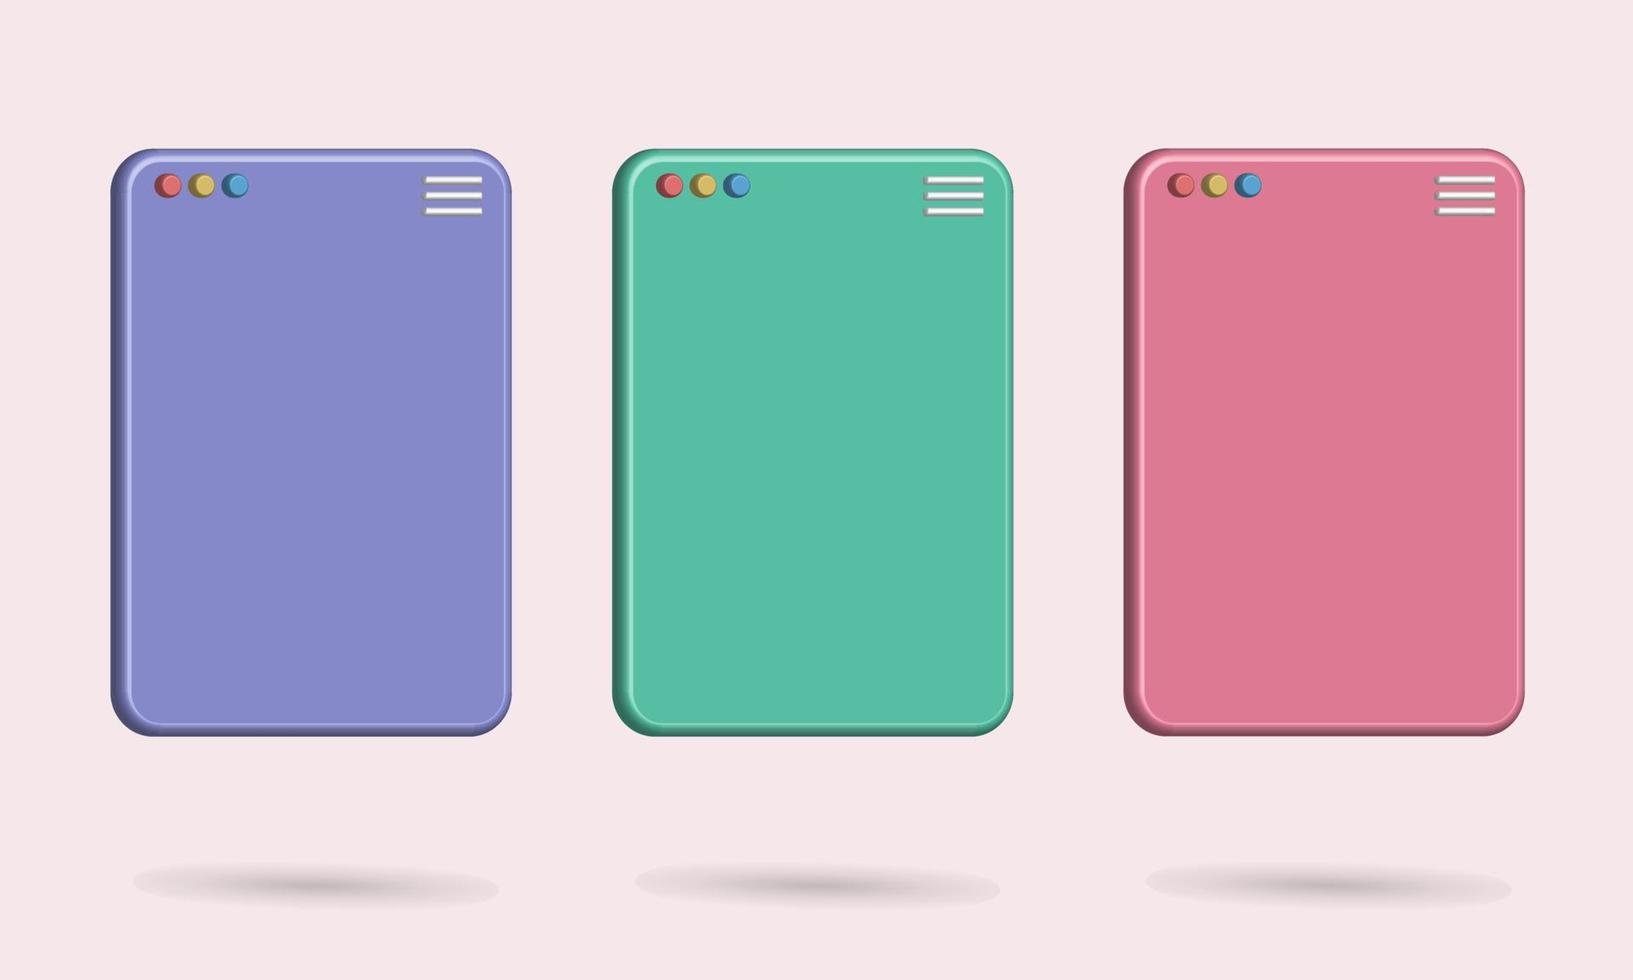 Tablet de pacote 3d com cores roxas, verdes e rosa, melhor para o seu smartphone de imagem de propriedade vetor